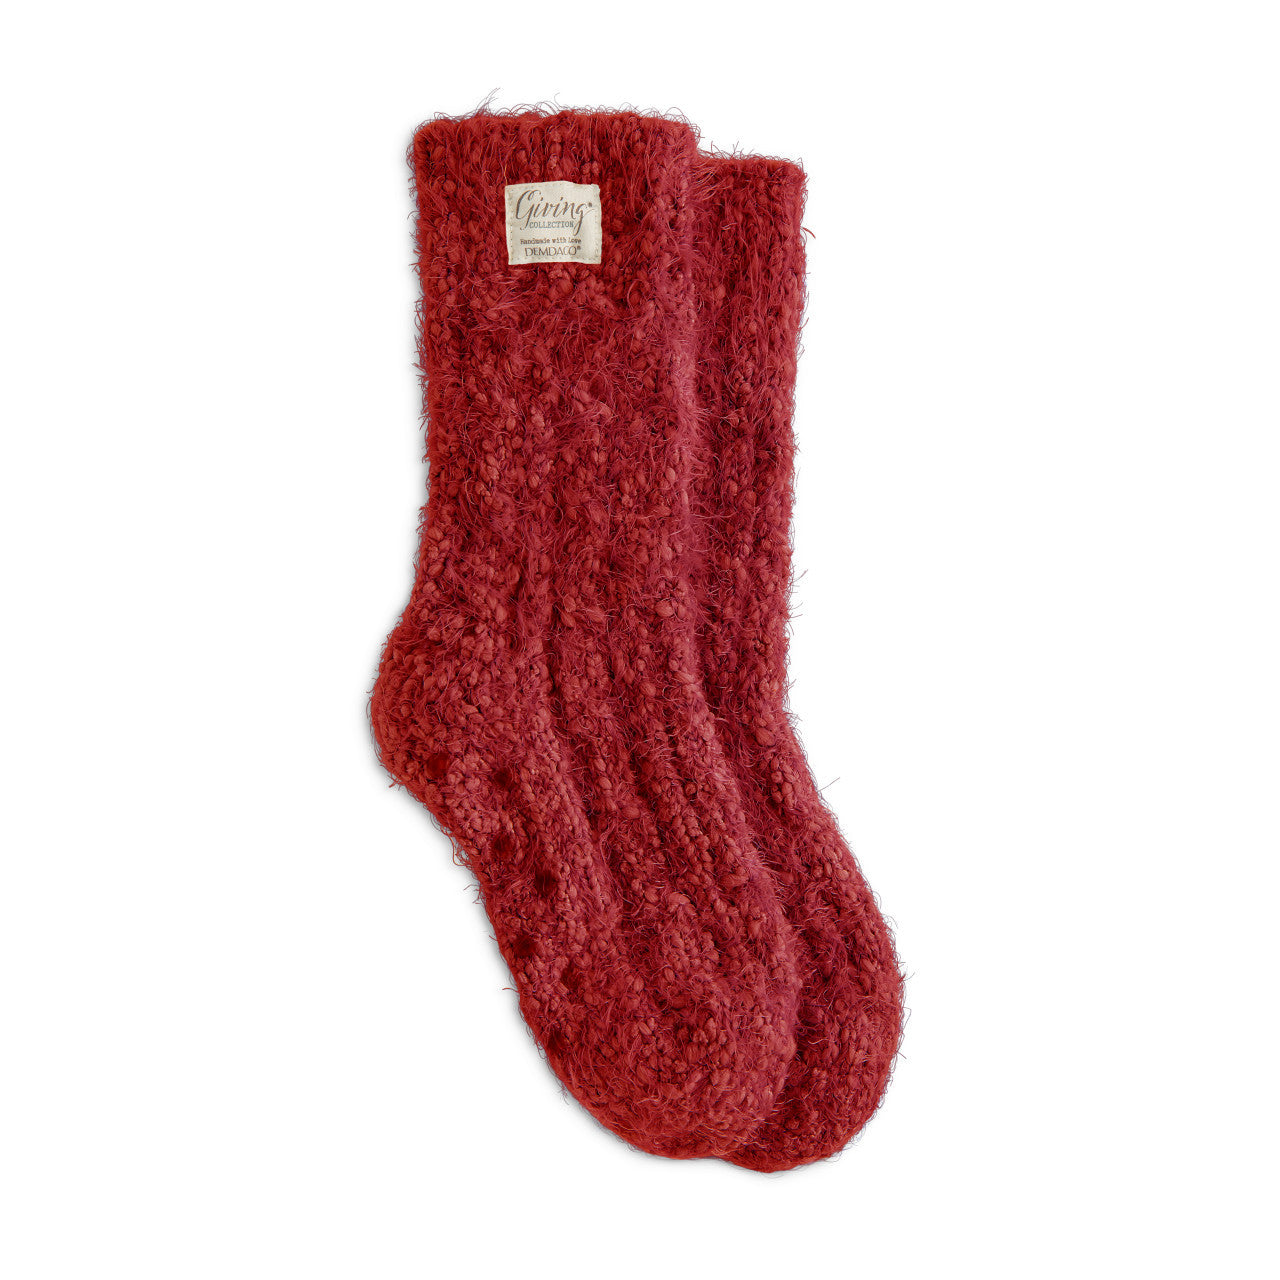 GIving Socks - Red